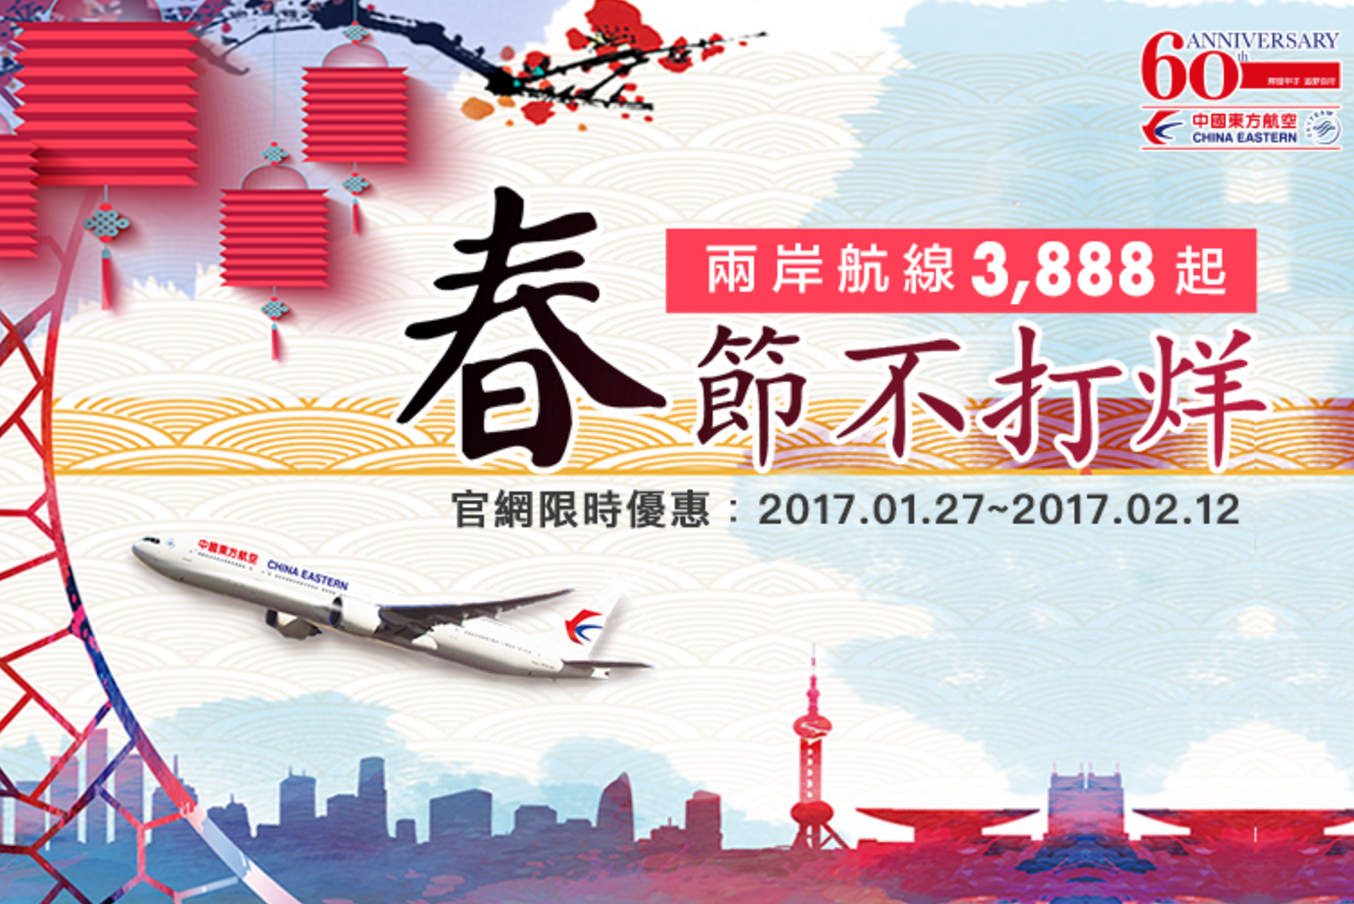 【特價機票】中國東方航空台北飛上海來回機票只要4400,30kg行李,送高鐵來回票,網路訂票教學